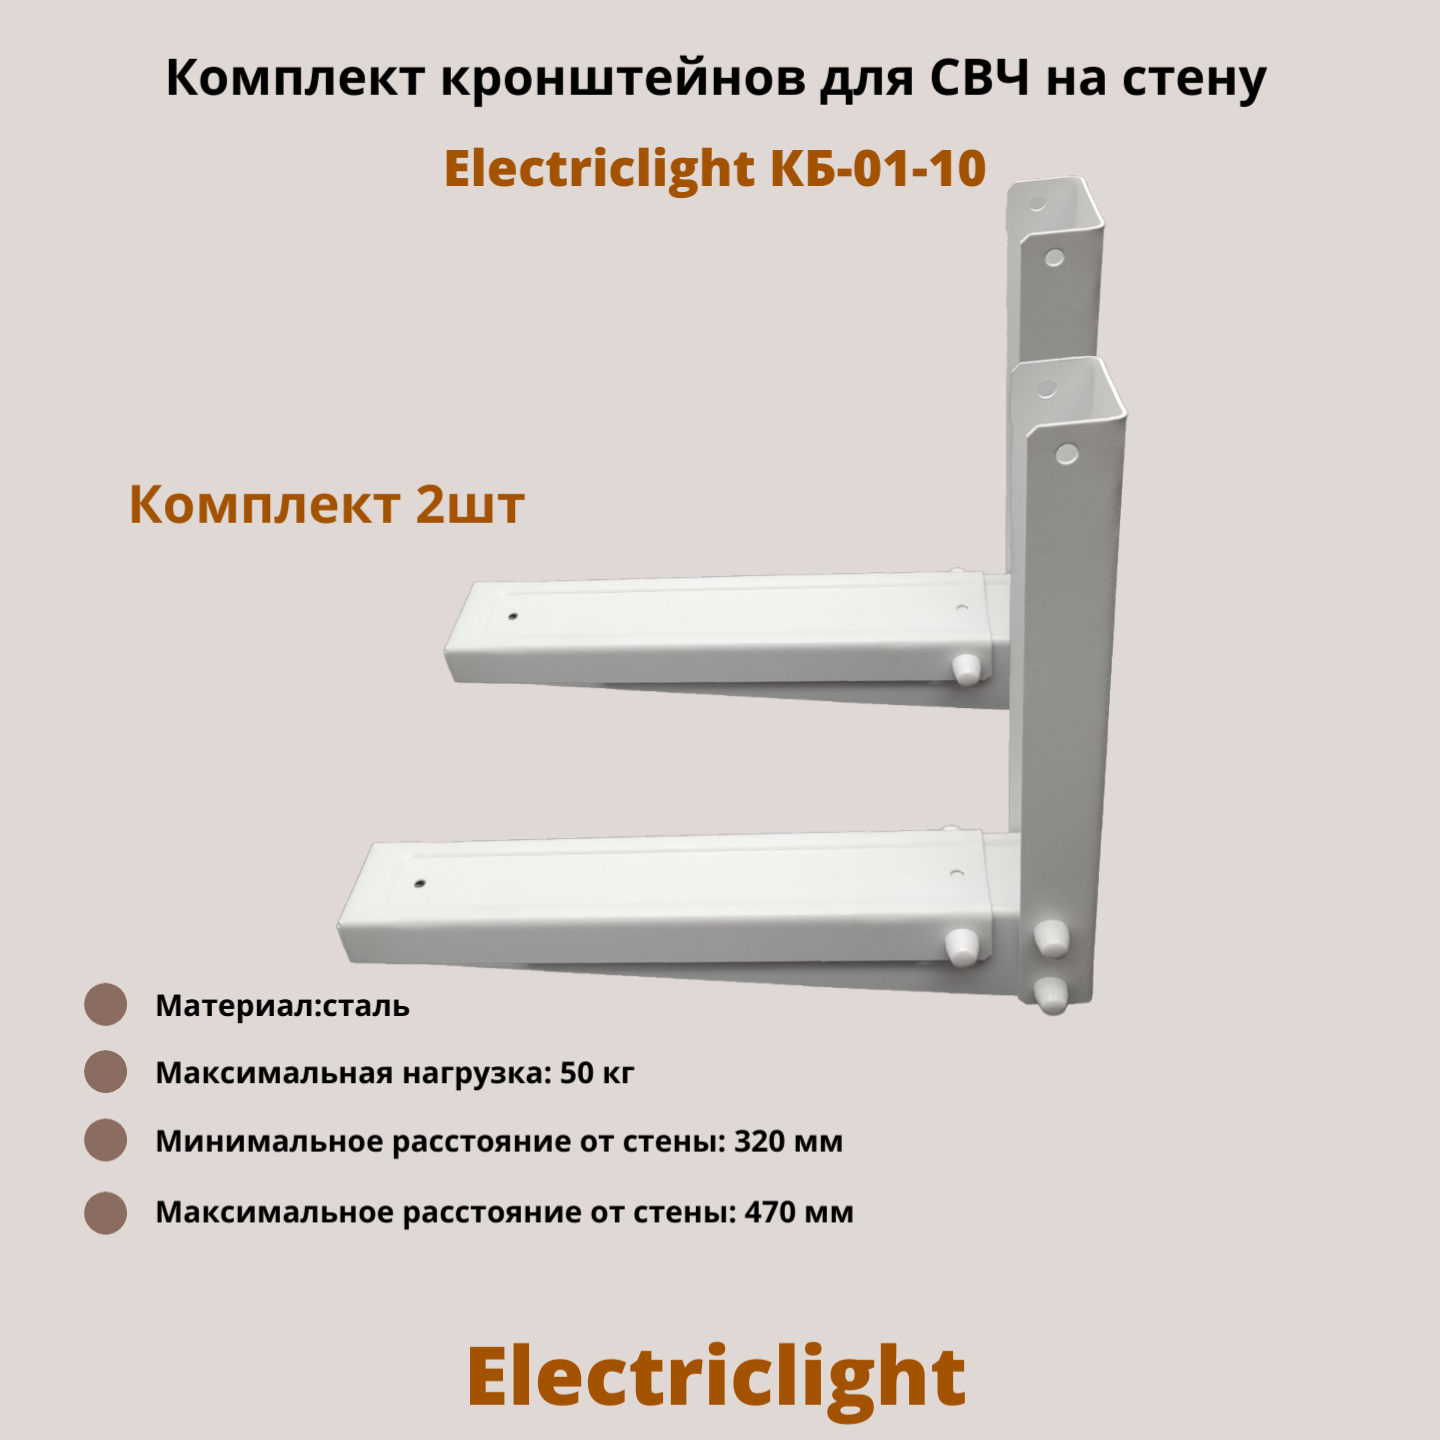 Кронштейн для микроволновых печей СВЧ на стену Electriclight КБ-01-10, белый